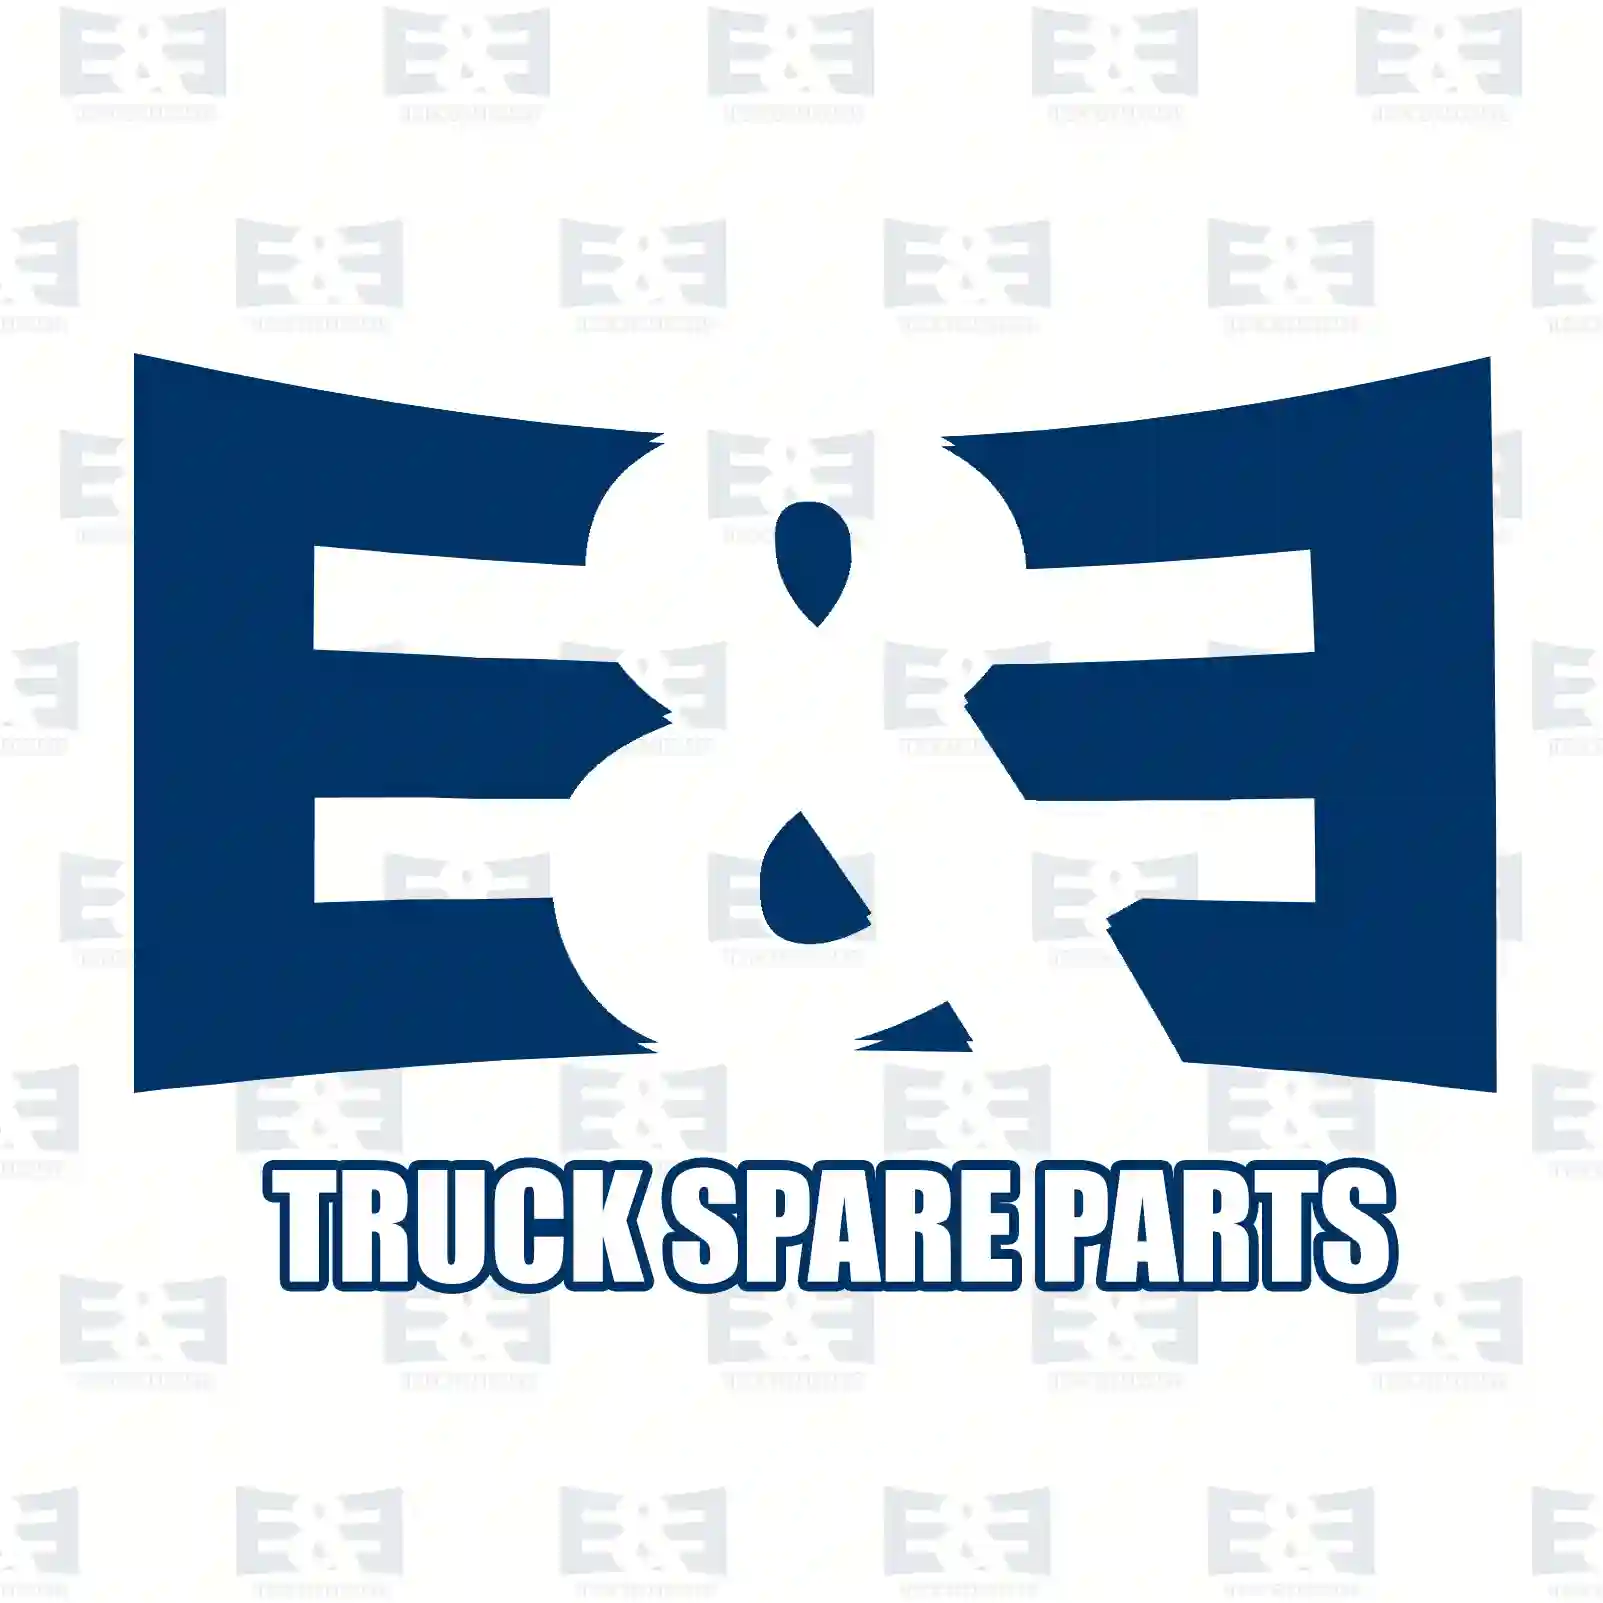 Load sensitive valve, 2E2294781, 0084263, 0084263A, 1302088, 1302088A, 1302088R, 84263, 84263R ||  2E2294781 E&E Truck Spare Parts | Truck Spare Parts, Auotomotive Spare Parts Load sensitive valve, 2E2294781, 0084263, 0084263A, 1302088, 1302088A, 1302088R, 84263, 84263R ||  2E2294781 E&E Truck Spare Parts | Truck Spare Parts, Auotomotive Spare Parts